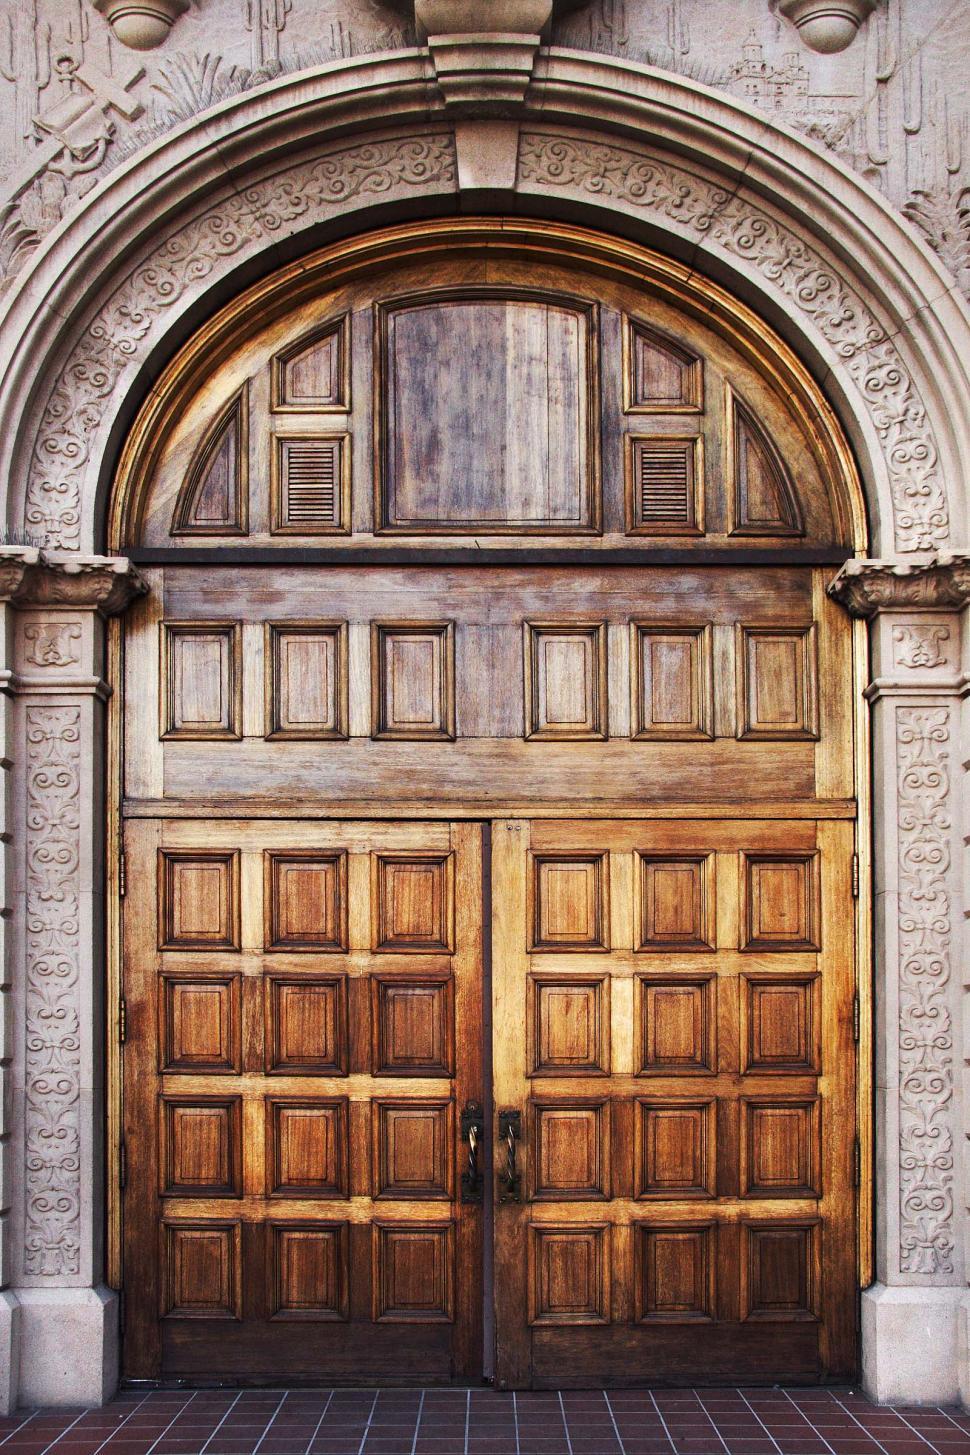 Free Image of Old regal doorways 